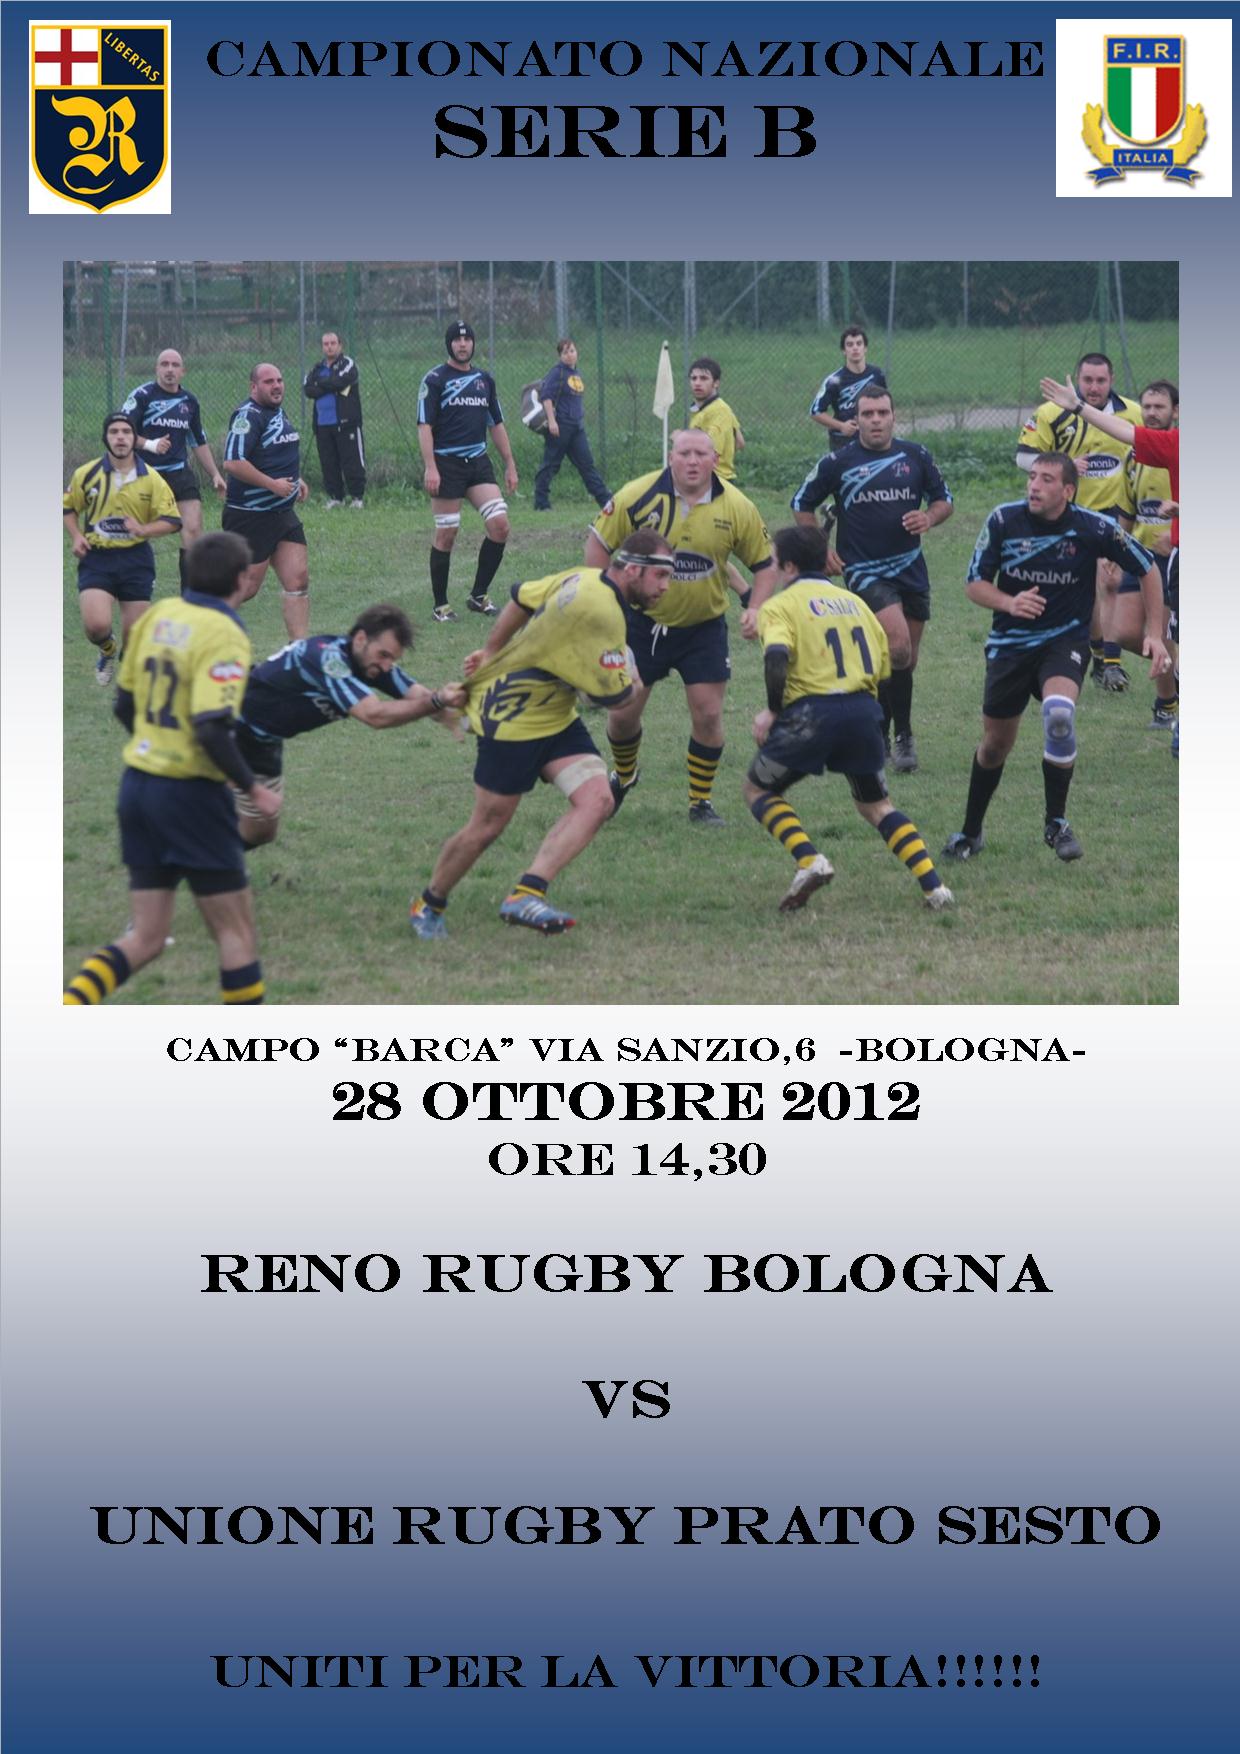 Reno Rugby Bologna vs Prato Sesto